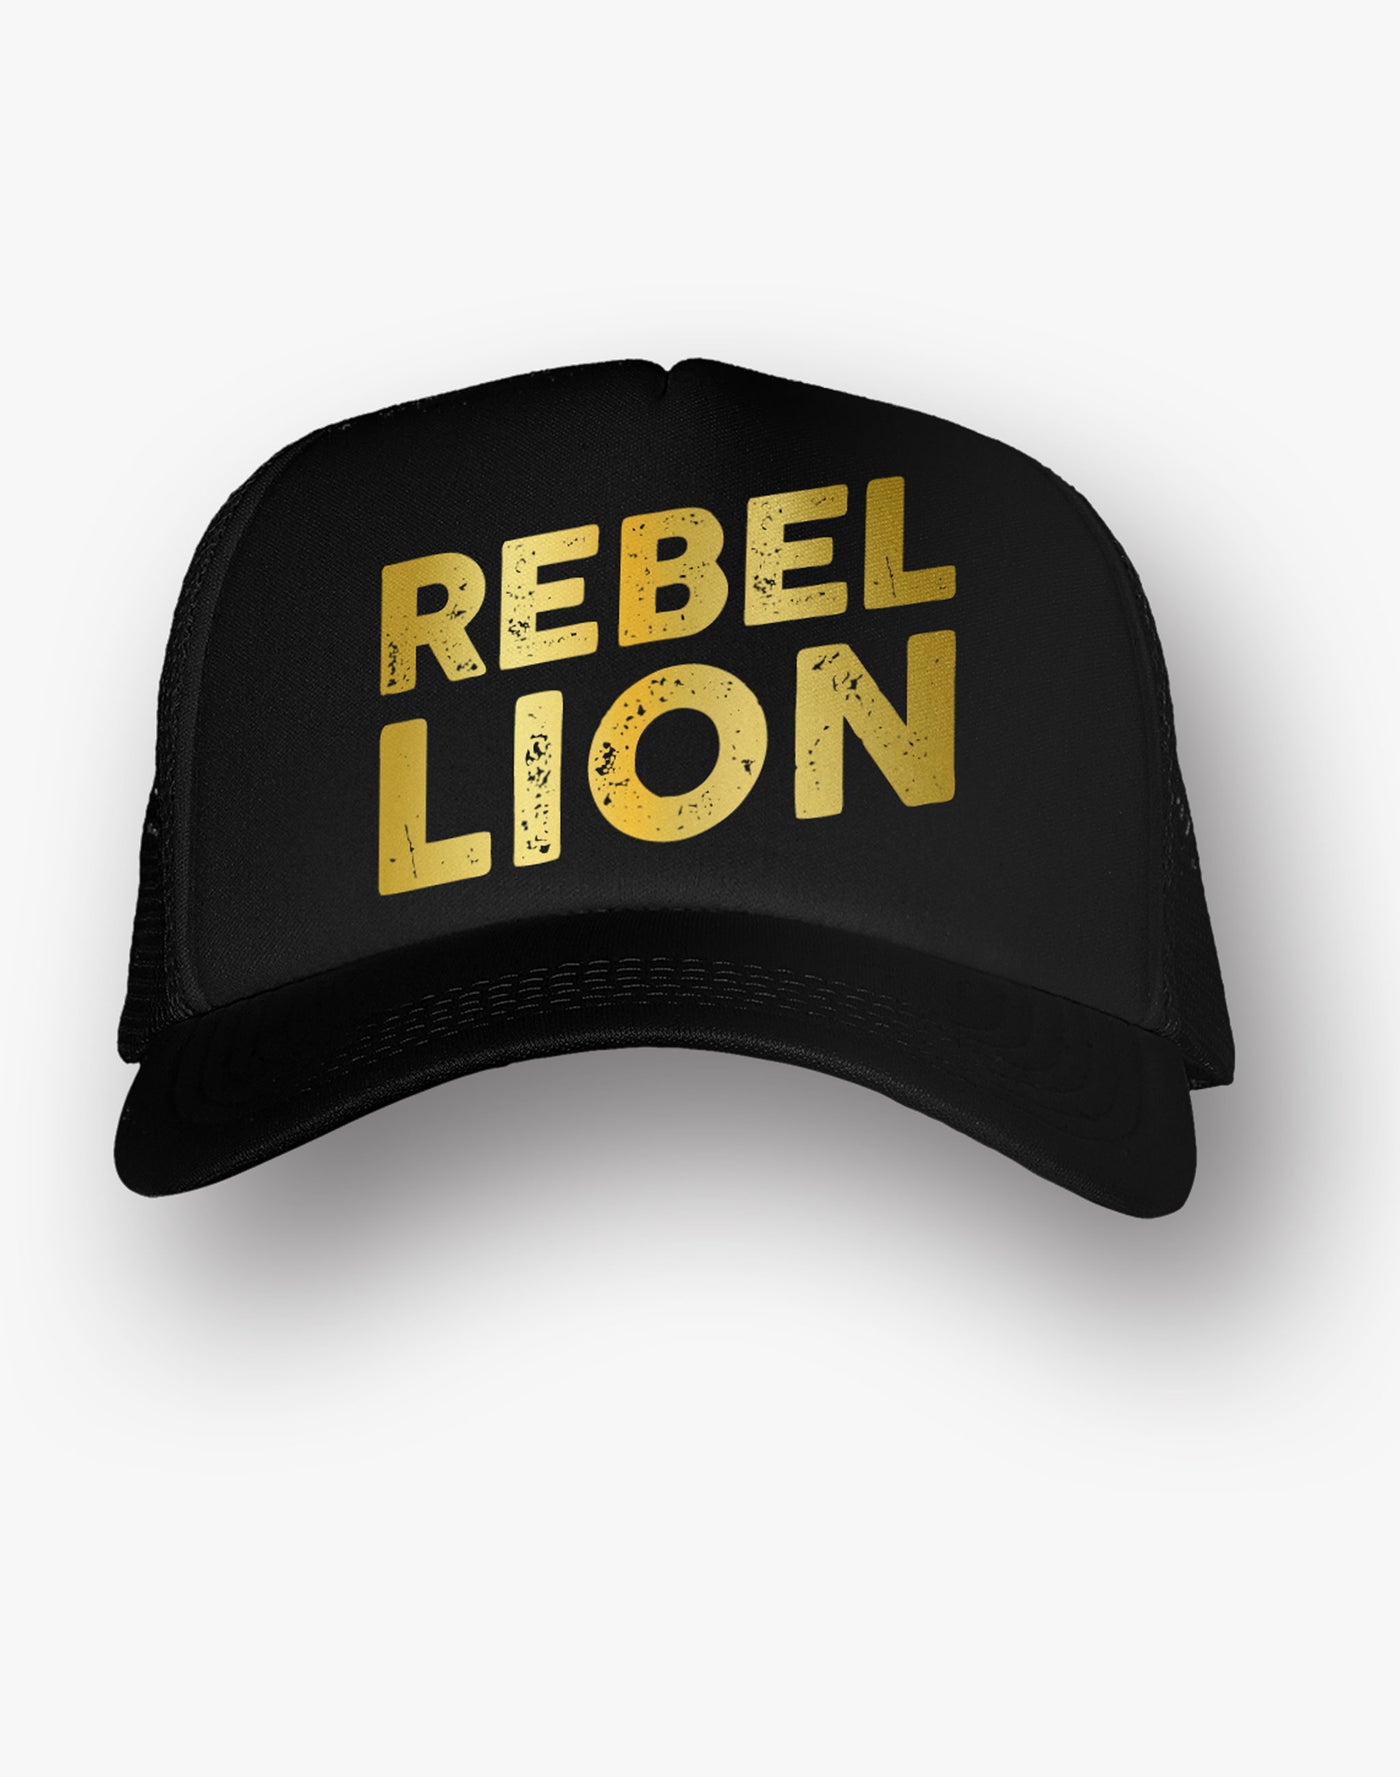 Rebel Lion Stacked Gold Foil Black Trucker Hat